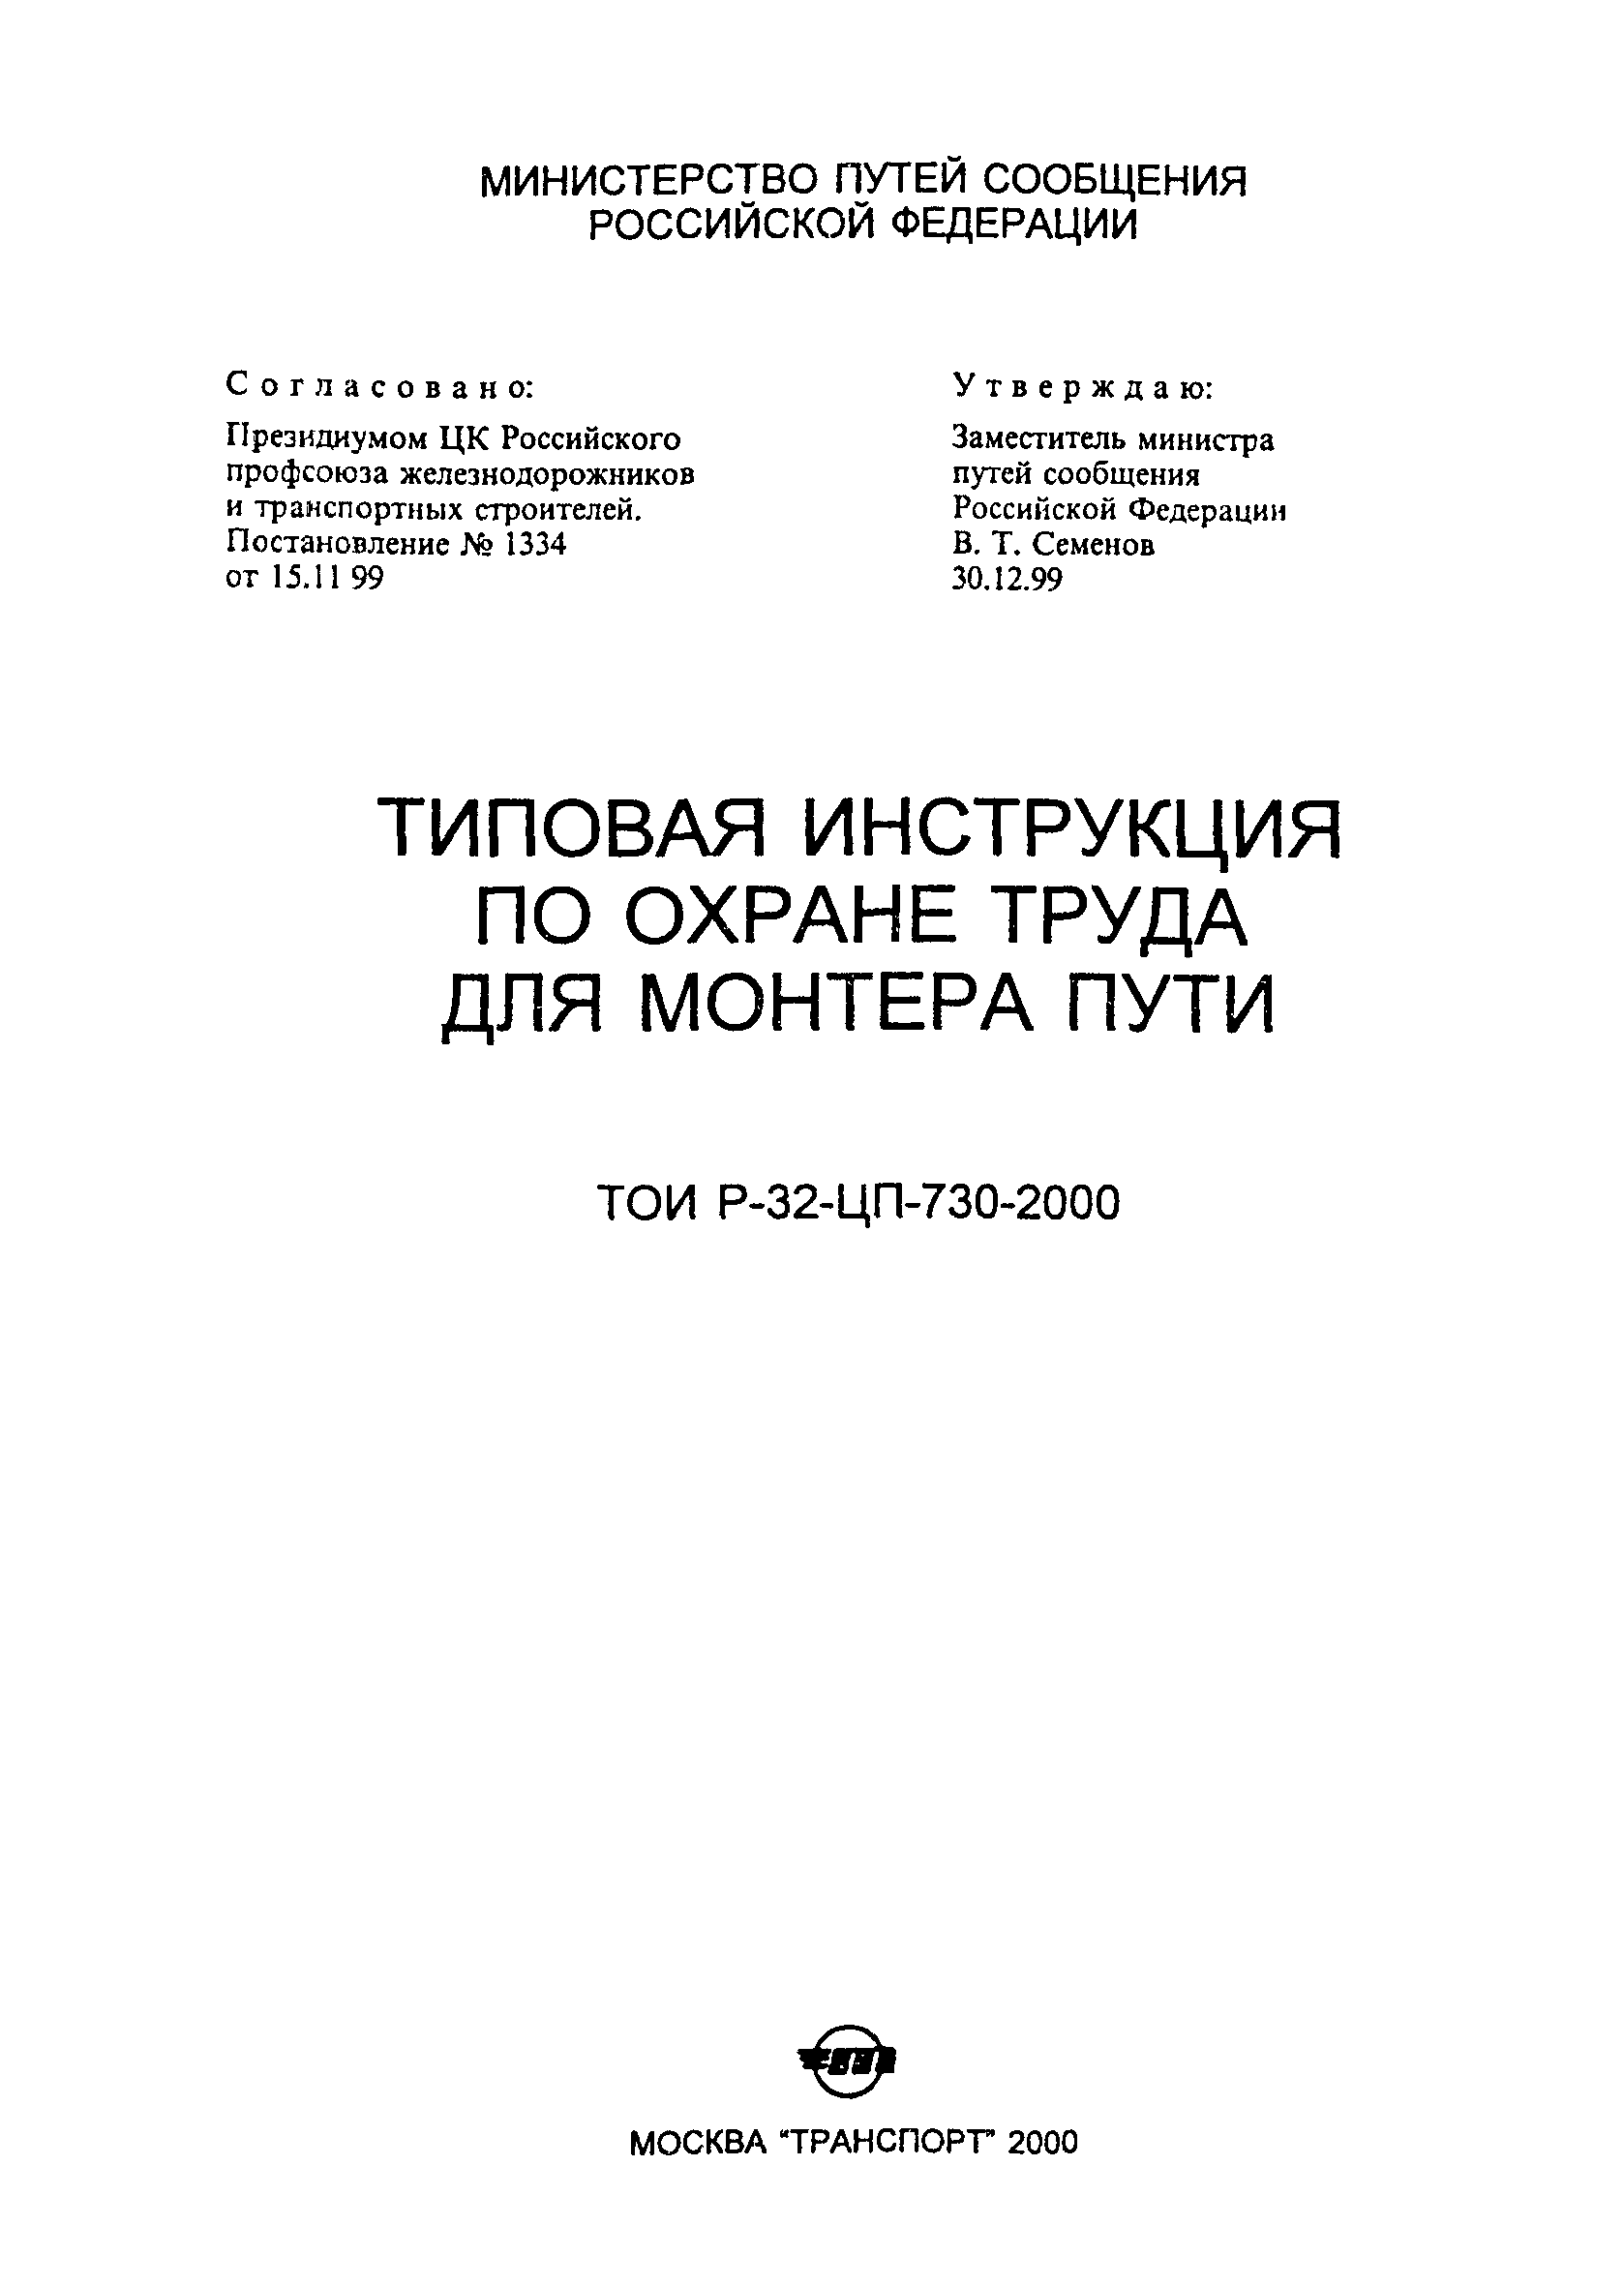 ТОИ Р-32-ЦП-730-2000